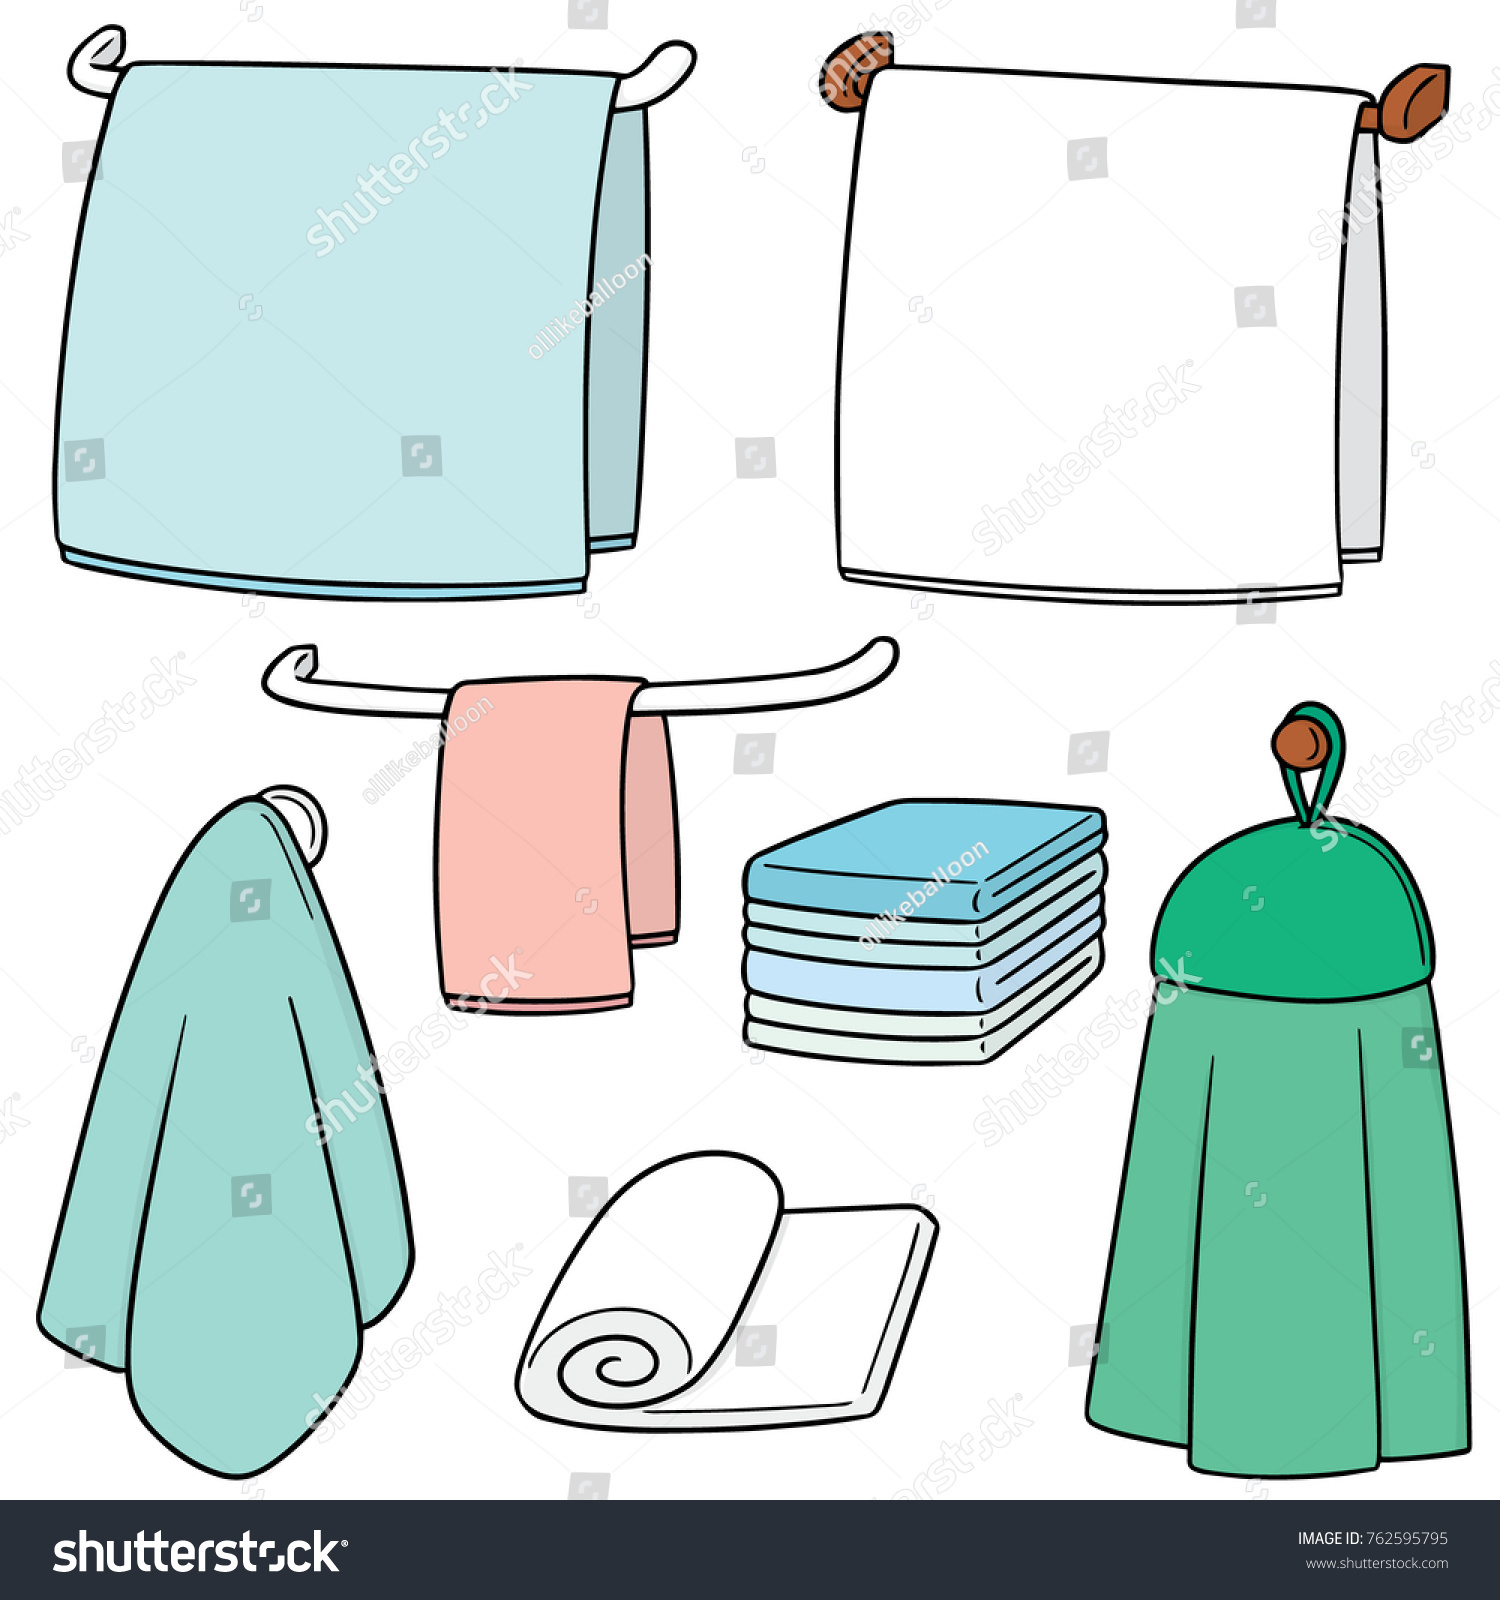 Схематичное изображение полотенца